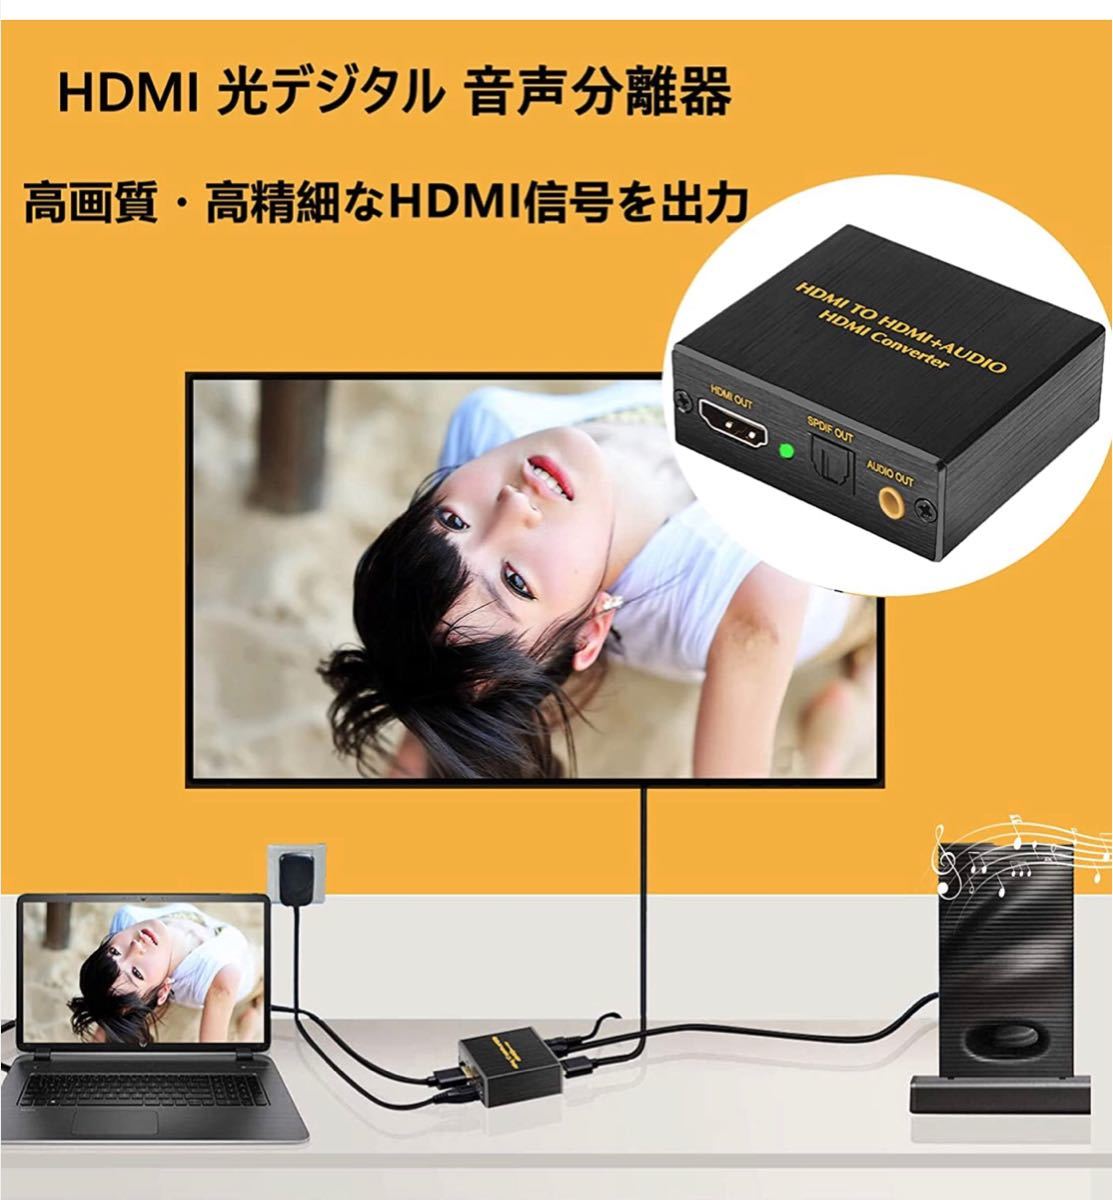 HDMI 音声分離 光デジタル 分離器 4K オーディオ 映像 音声 分離機器